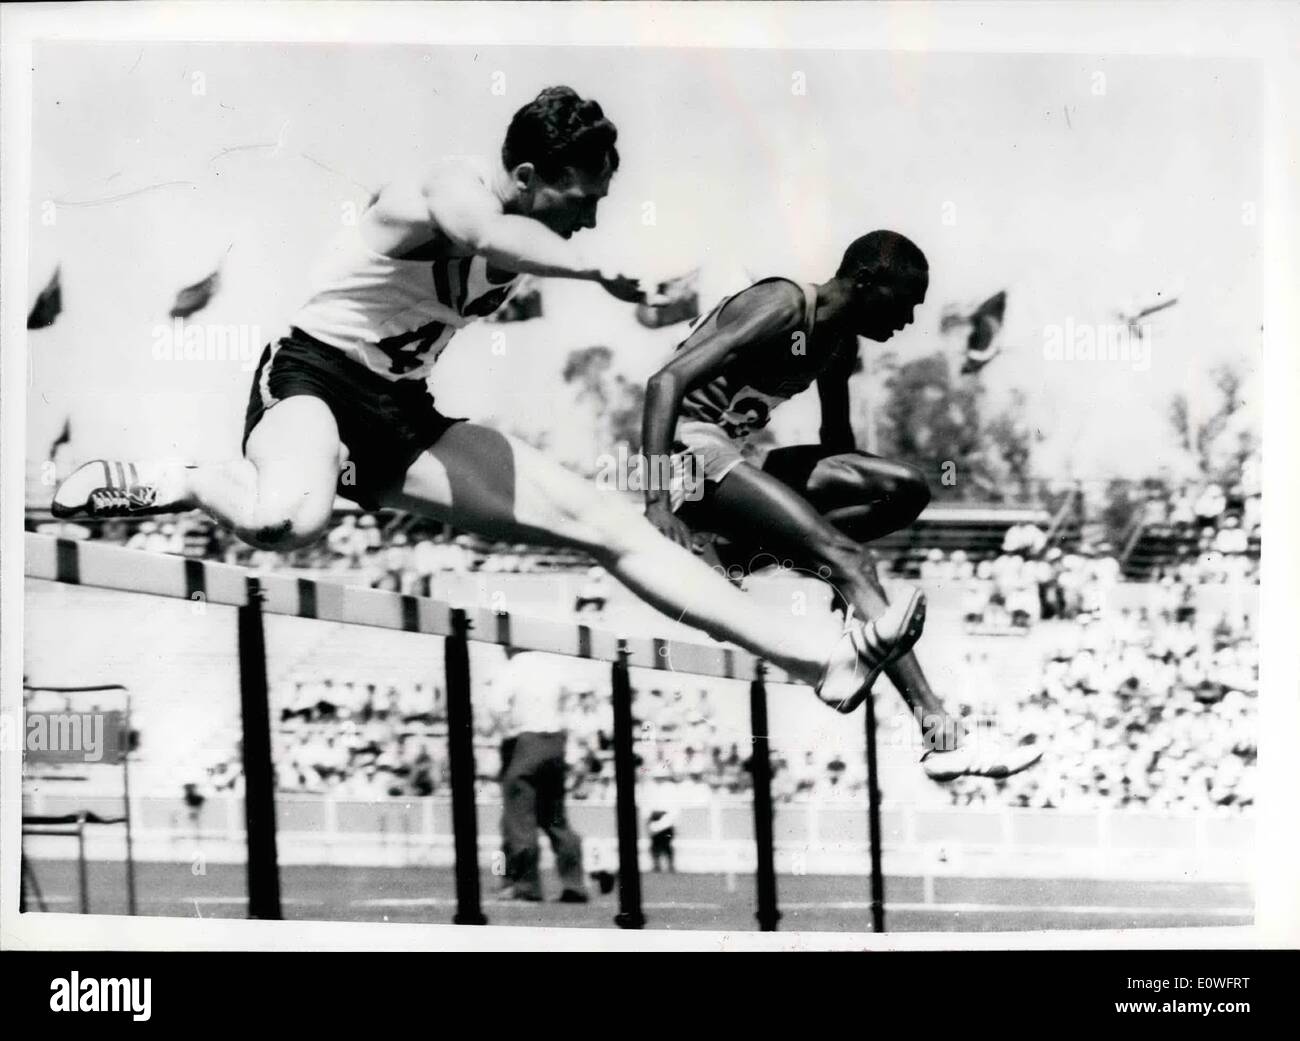 11. November 1962 - australische gewinnt Hürden: Foto zeigt australische K Roche (nächste Kamera Nr. 4) und K. Songok (No. 21) von Kenia klar die letzte Hürde in der 440 yds Männer ' s Hürden bei den British Empire and Commonwealth Games in Perth. Roche hat gewonnen. Stockfoto